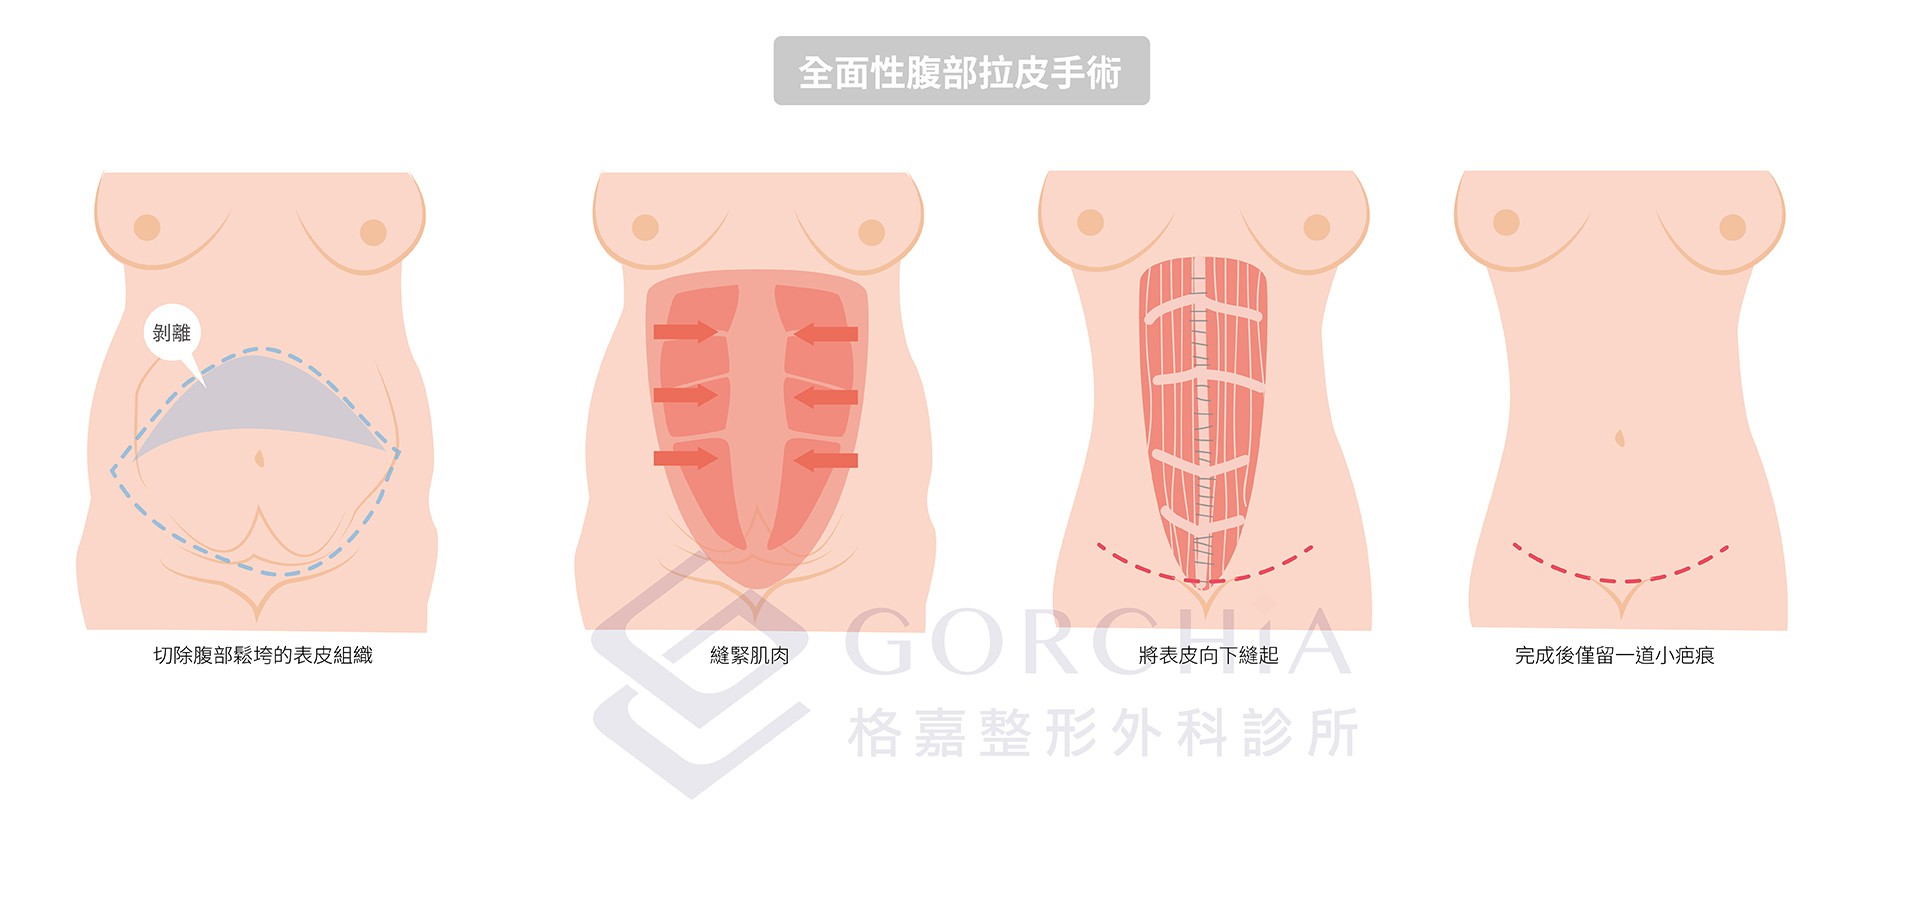 腹部拉皮手術過程